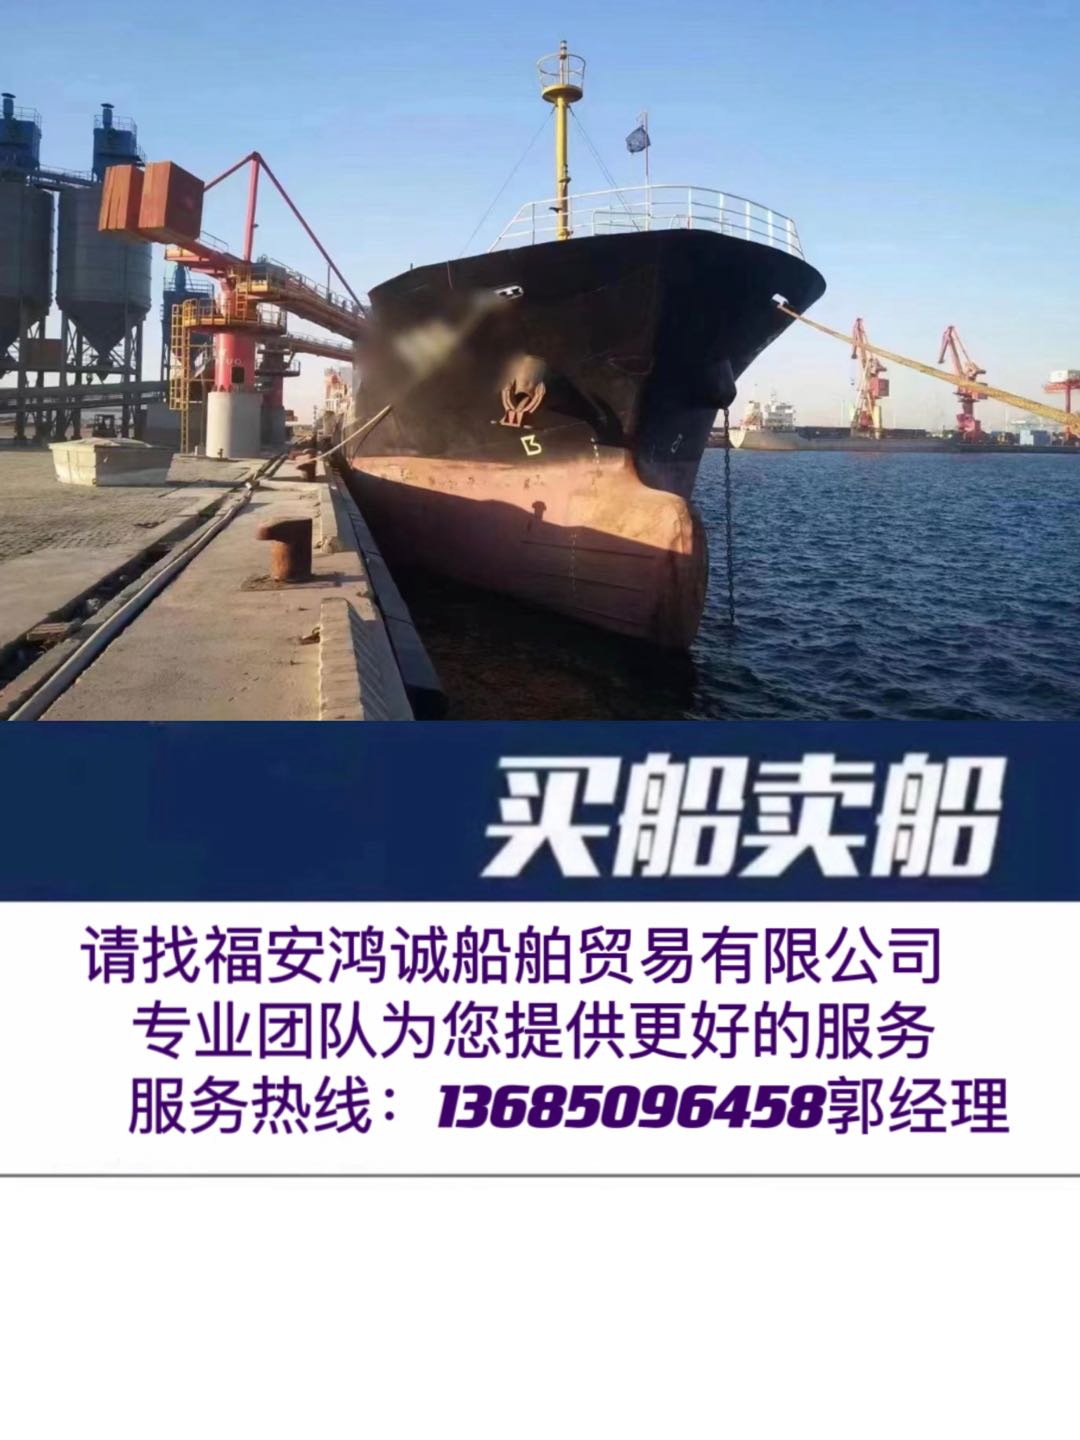 低价出售07年4700吨干货船